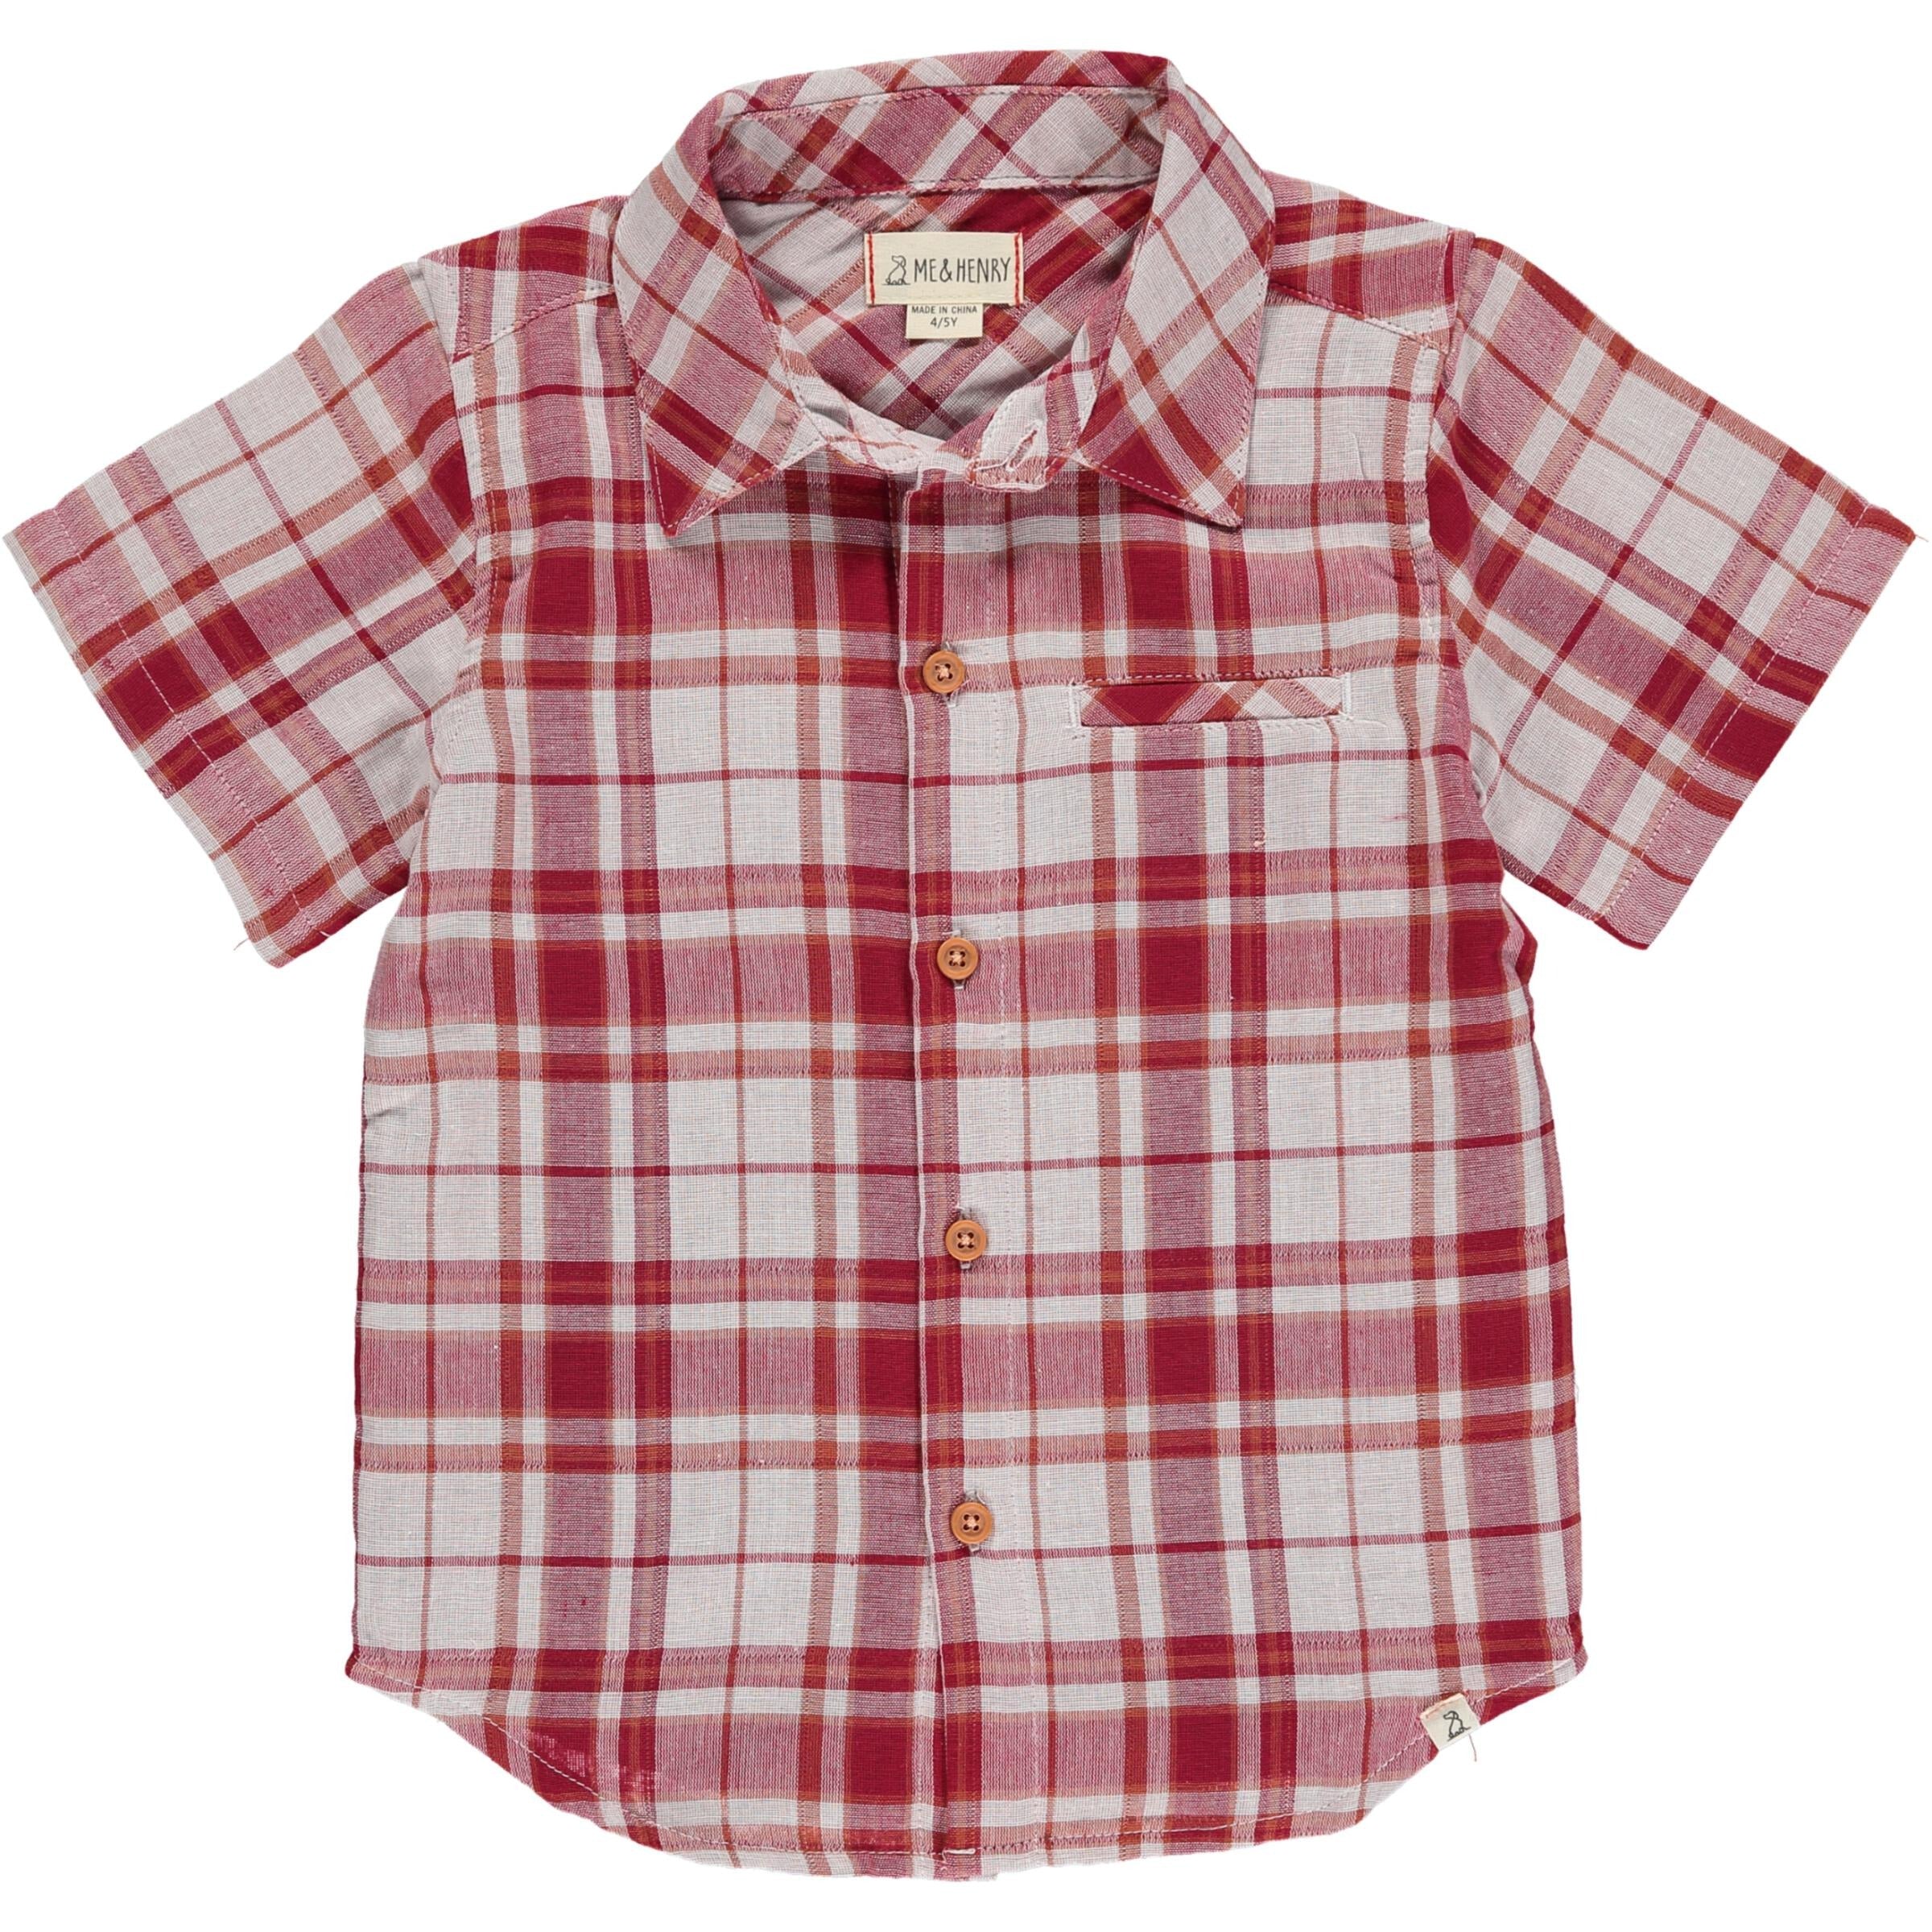 Newport Shirt - Red/White Checked